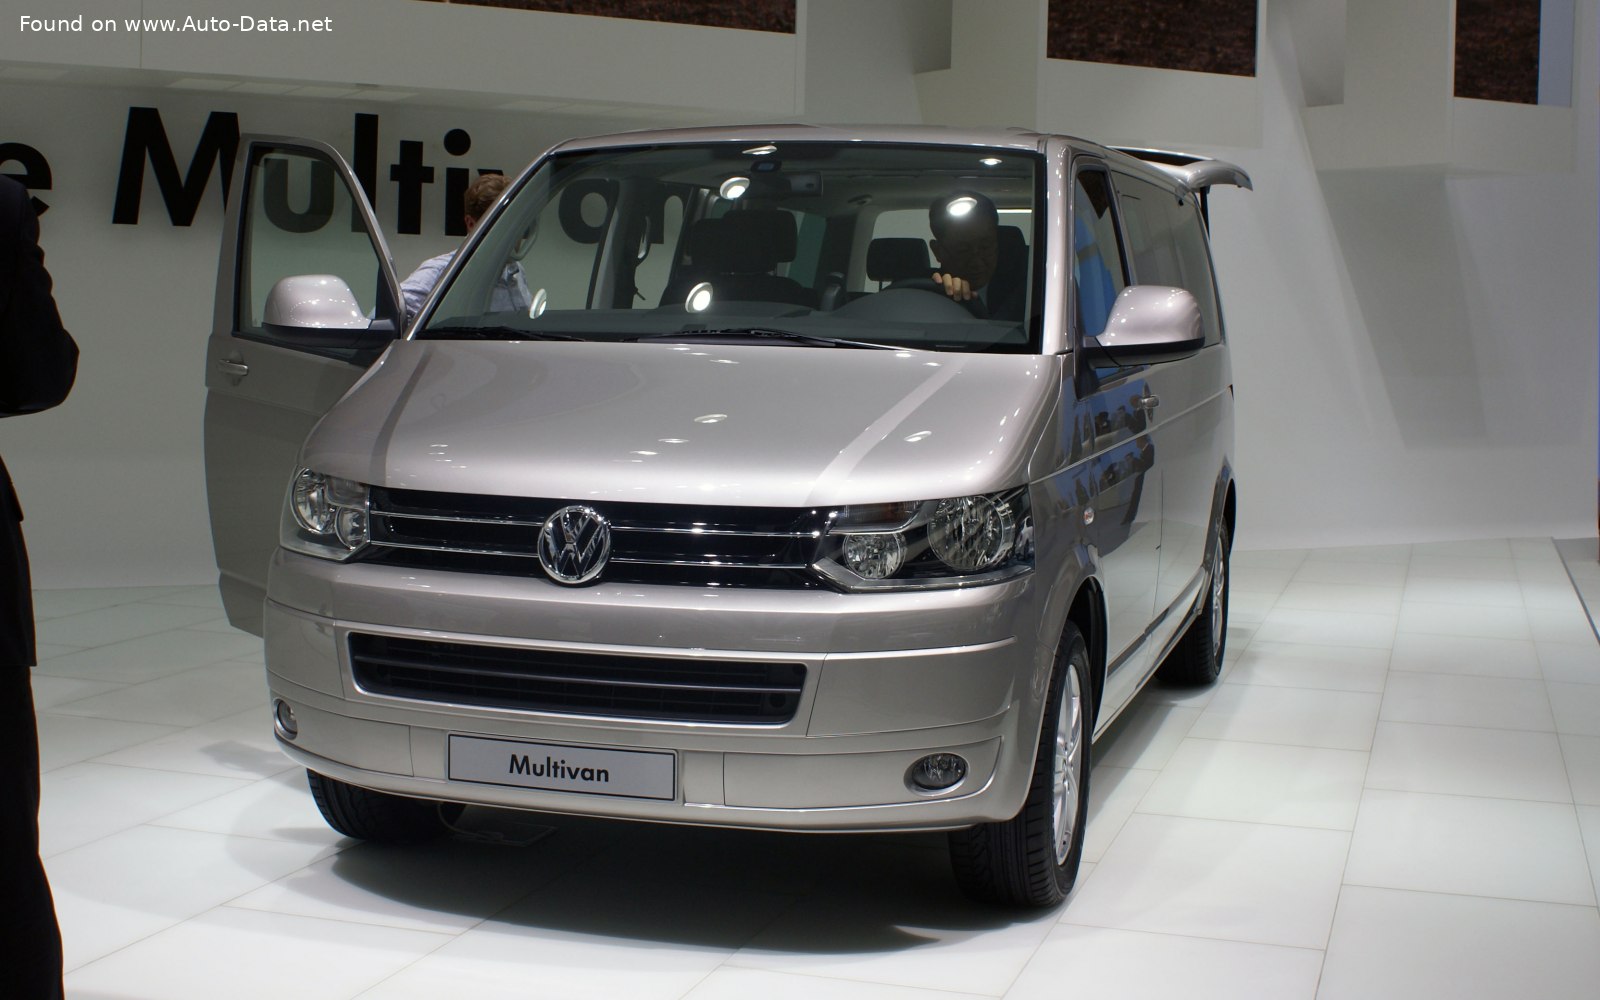 Volkswagen T5 Multivan Passenger 2003-2009